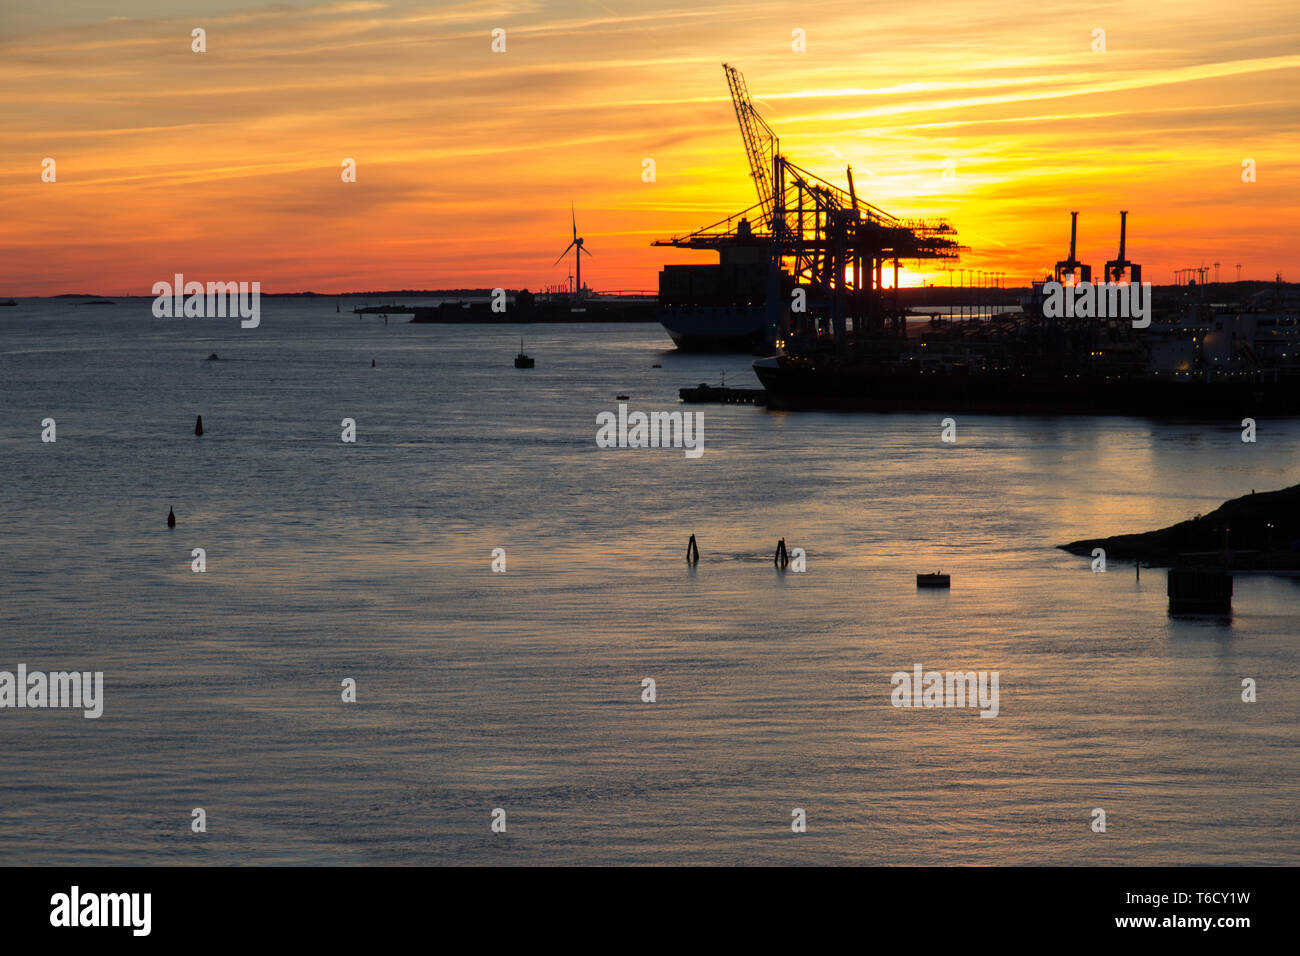 Krähne Kran bei Sonnenuntergang im Hafen von Göteborg Schweden sunset in harbour of gothenburg with crane cranes Stock Photo